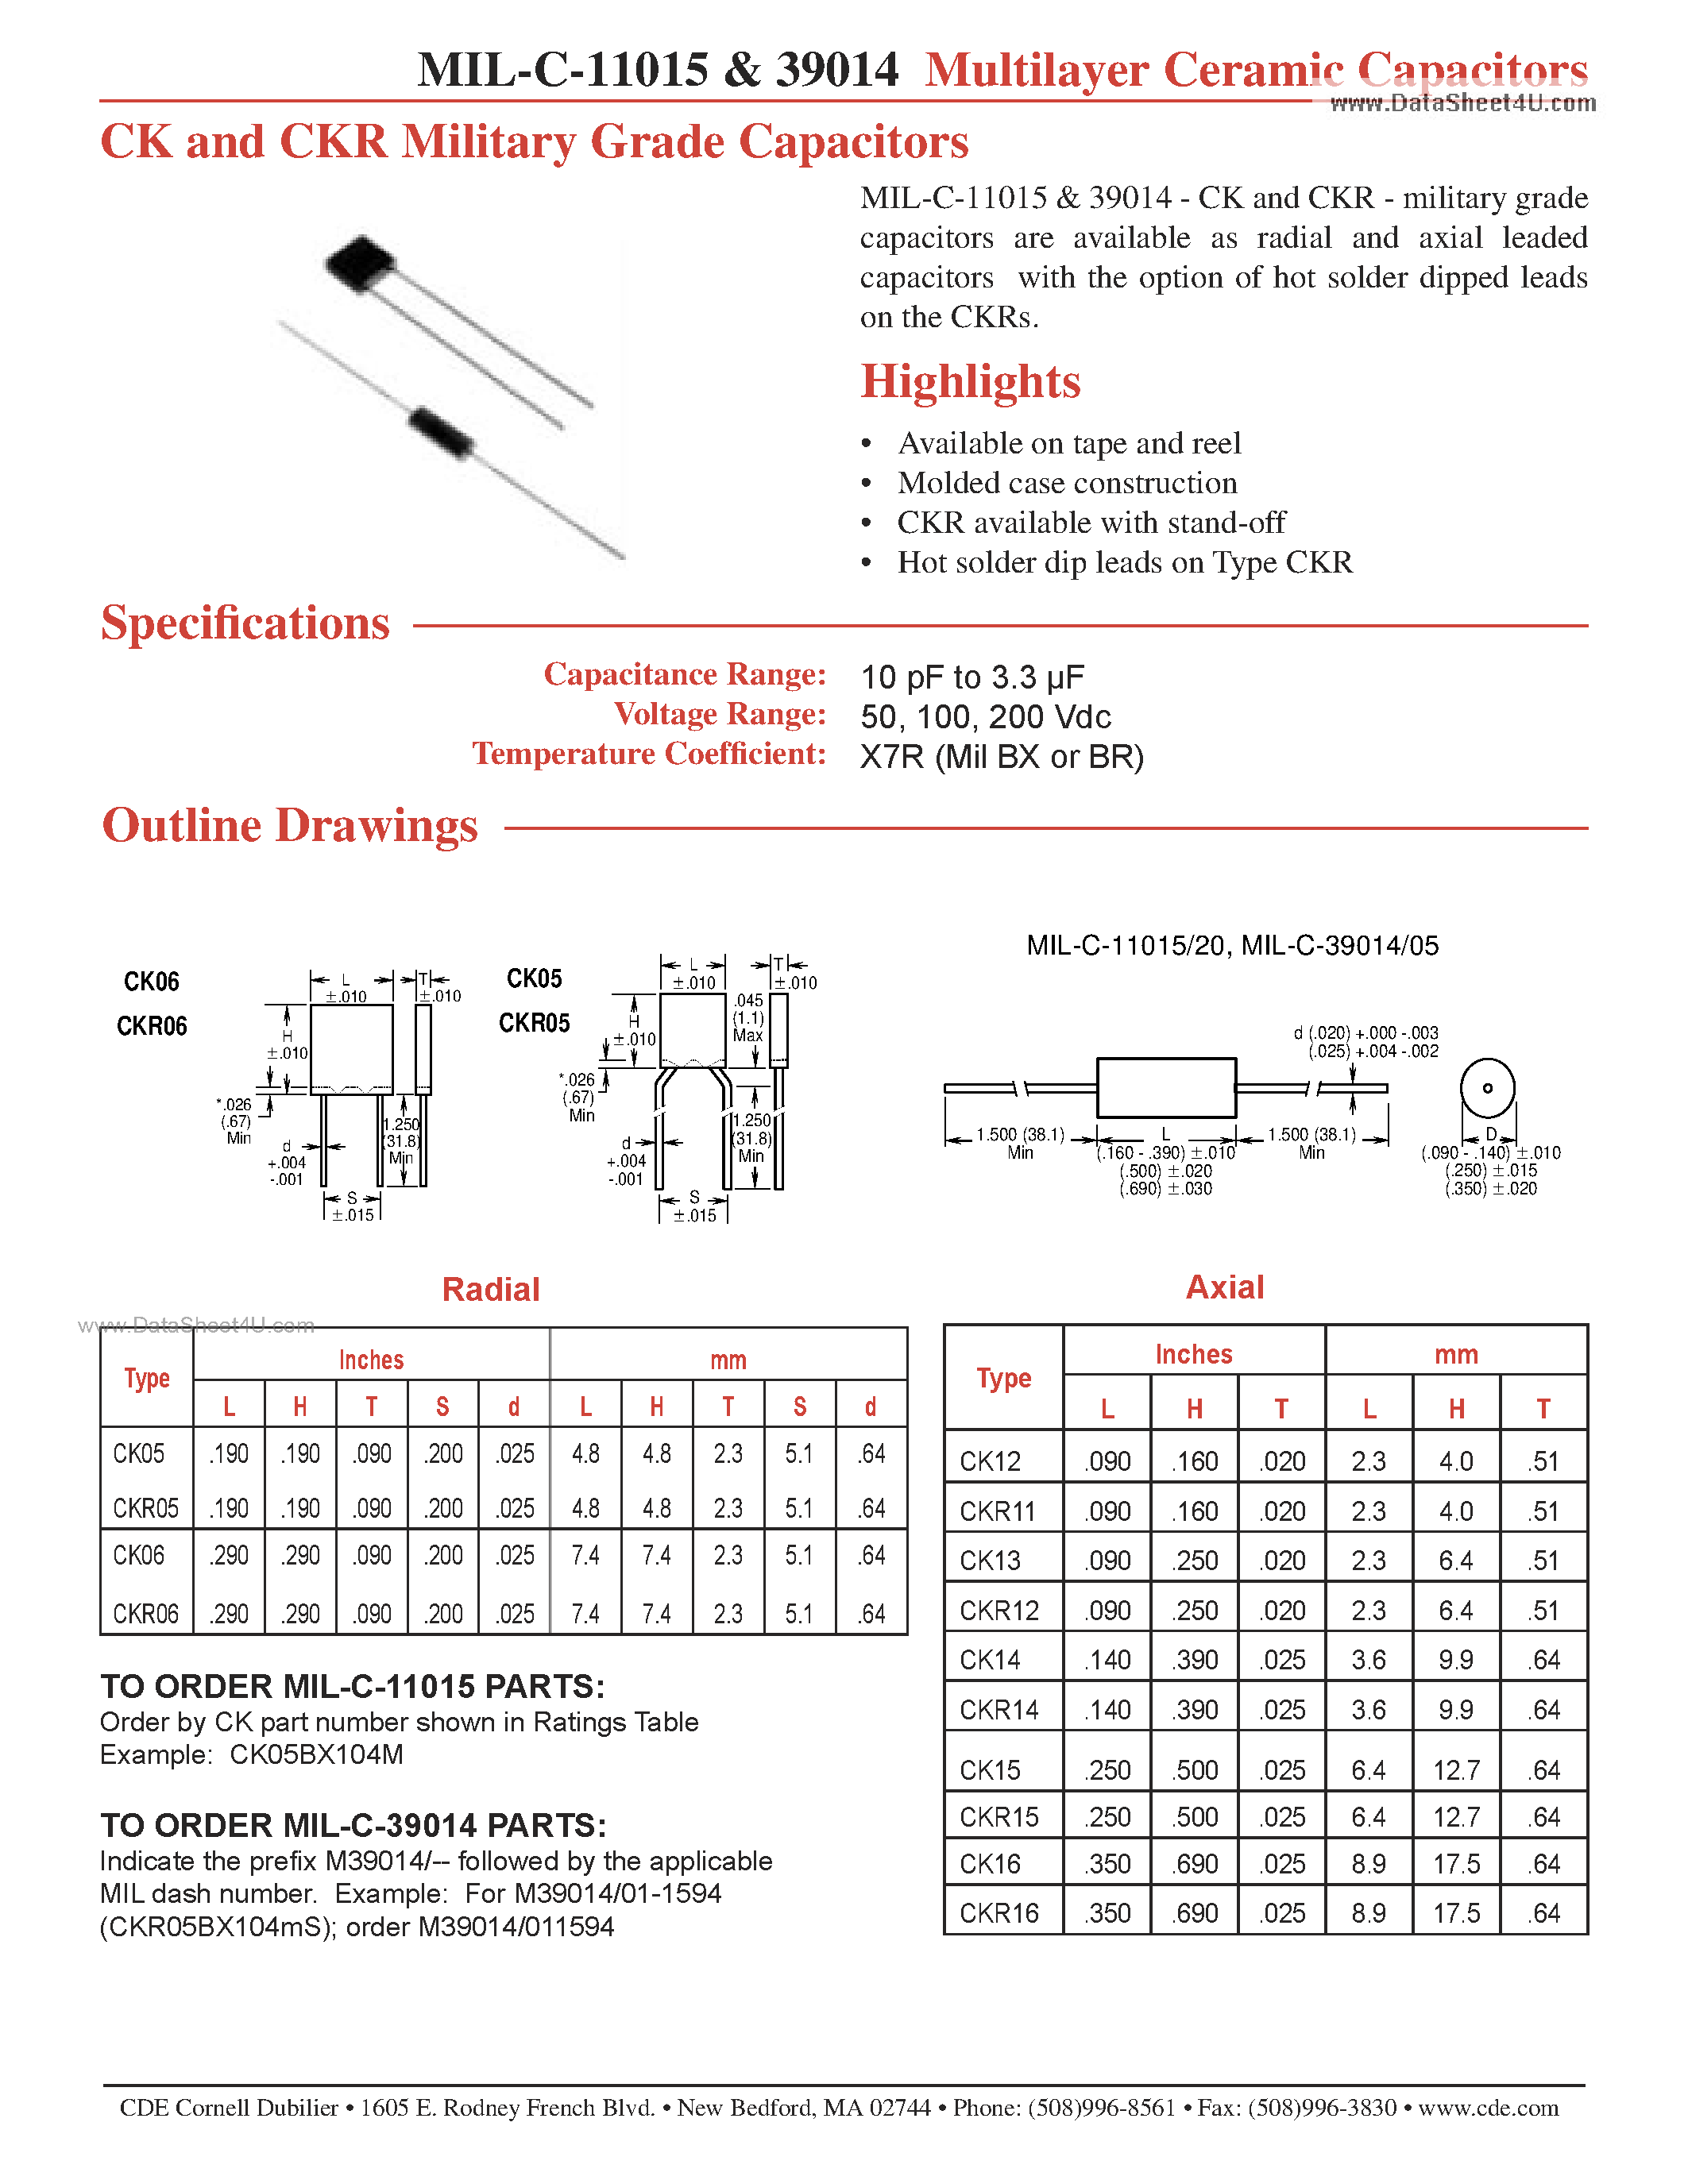 Datasheet MIL-C-39005 - (MIL-C-39005 / MIL-C-39014) Multilayer Ceramic Capacitors page 1